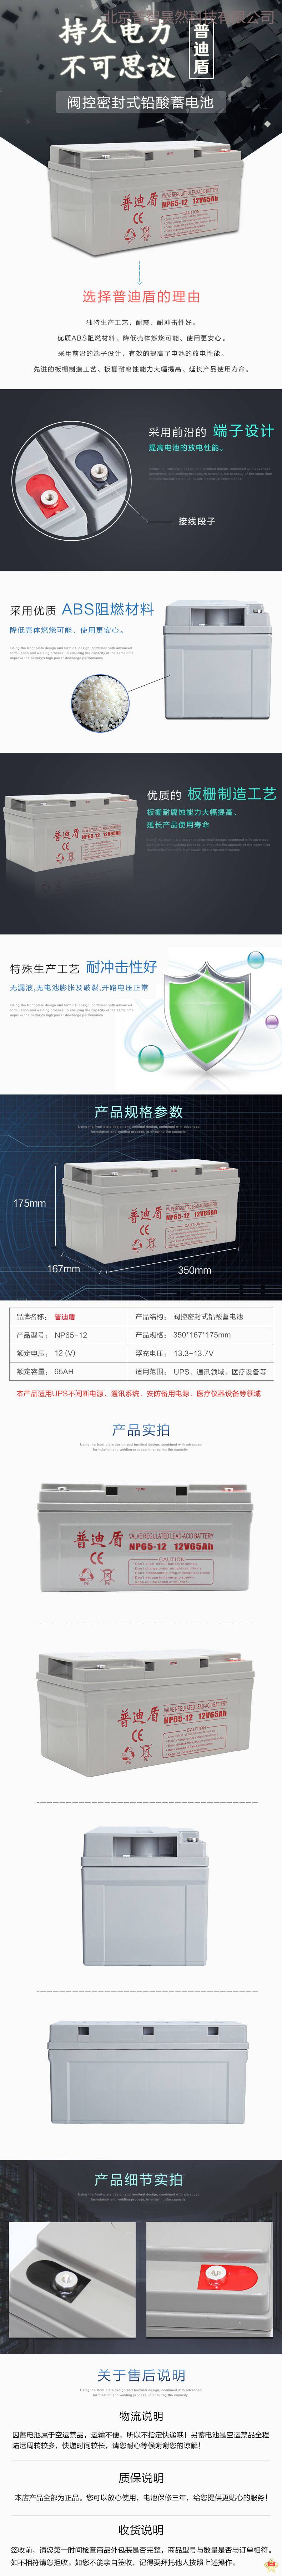 普迪盾阀控式铅酸免维护蓄电池NPG65-12 12V65AH UPS蓄电池 EPS电源 直流屏用 普迪盾蓄电池,UPS电池,铅酸蓄电池,免维护电池,12V65AH